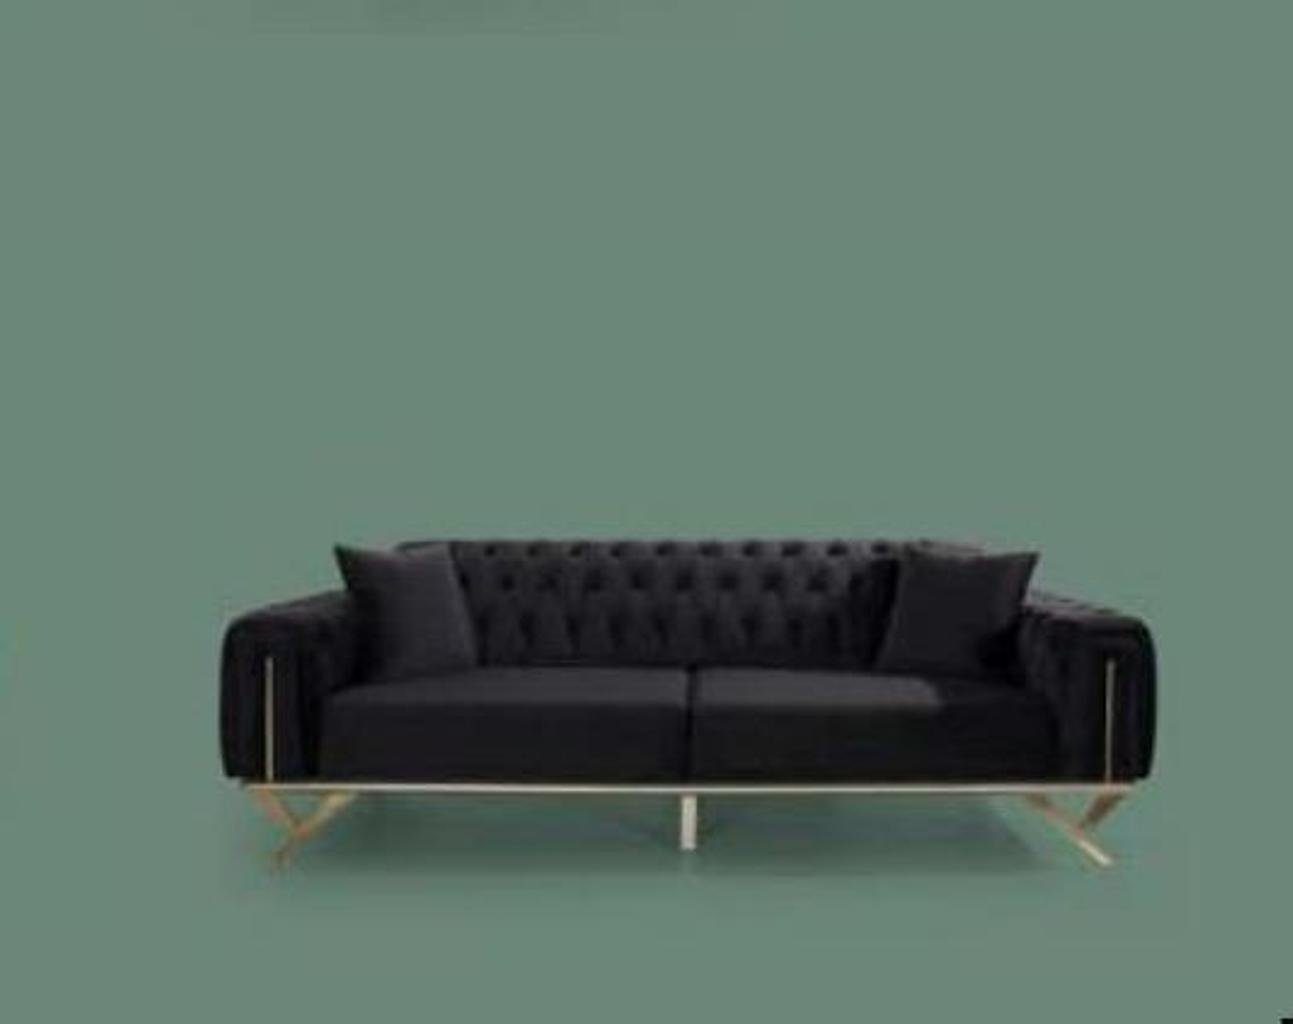 JVmoebel Sofa Schwarz Dreisitzer Sitzpolster Made Europe Couch in Couch, Chesterfield